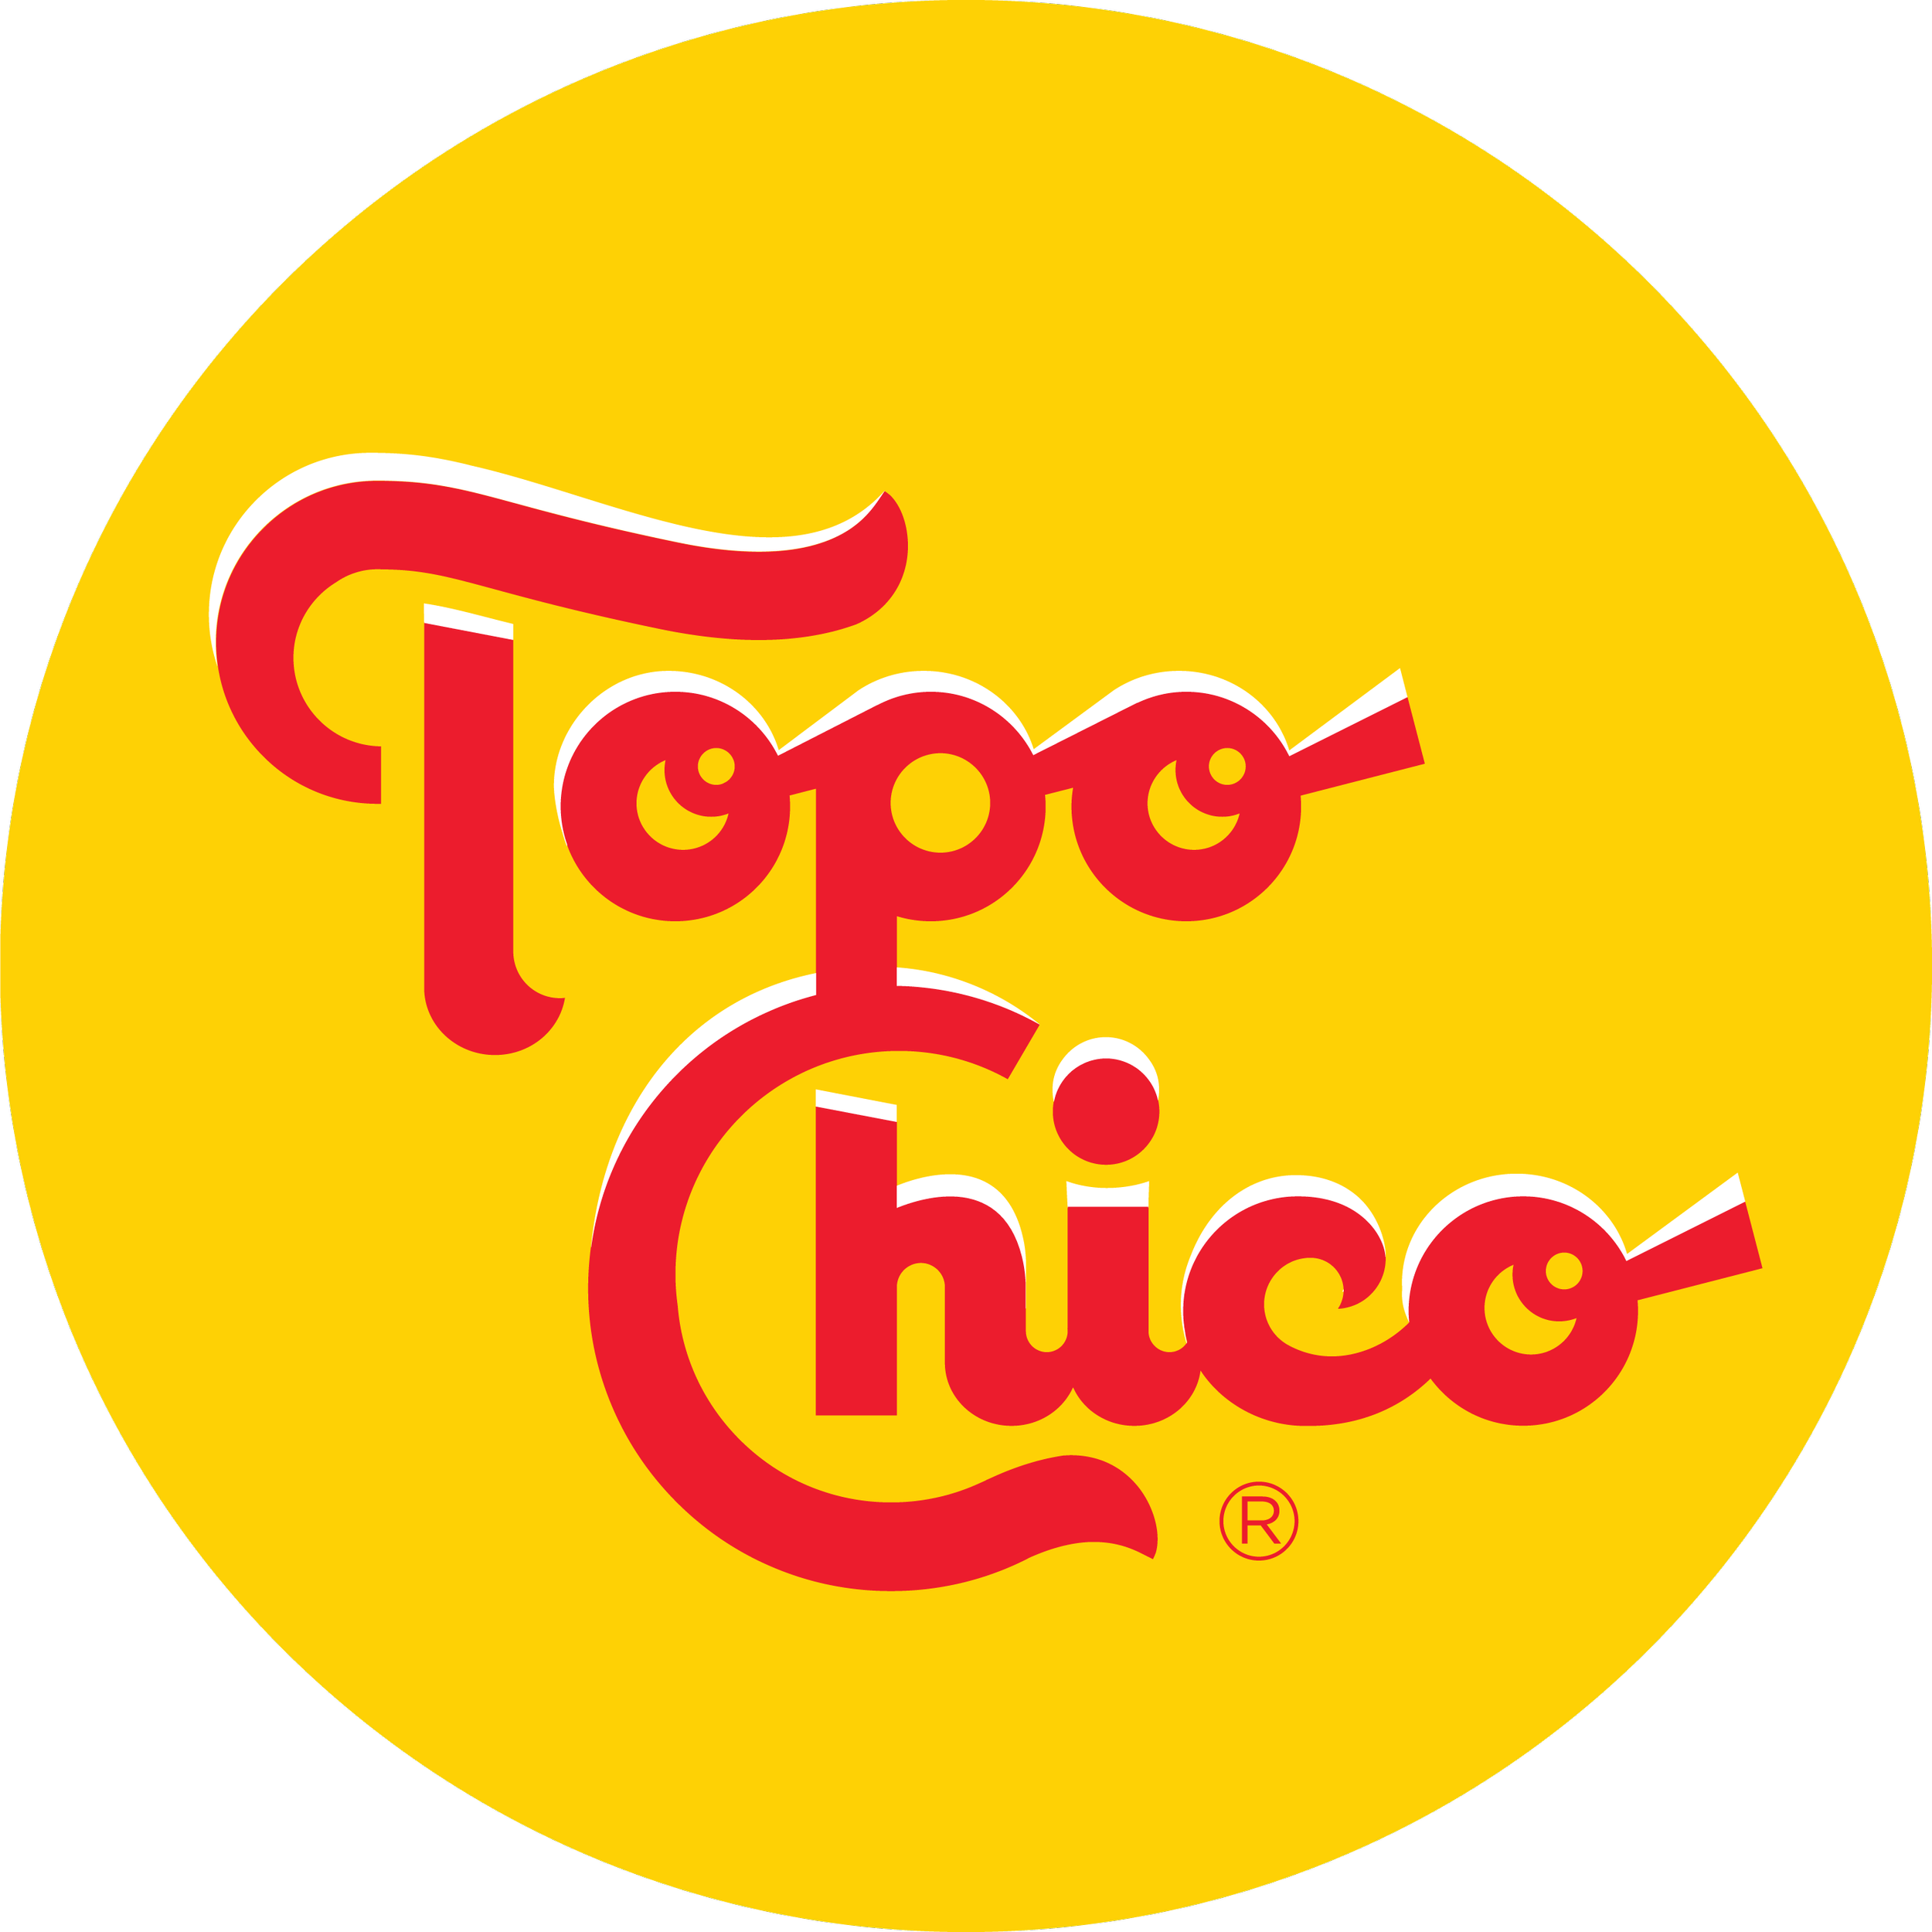 Topo Chico Circulo copy.png